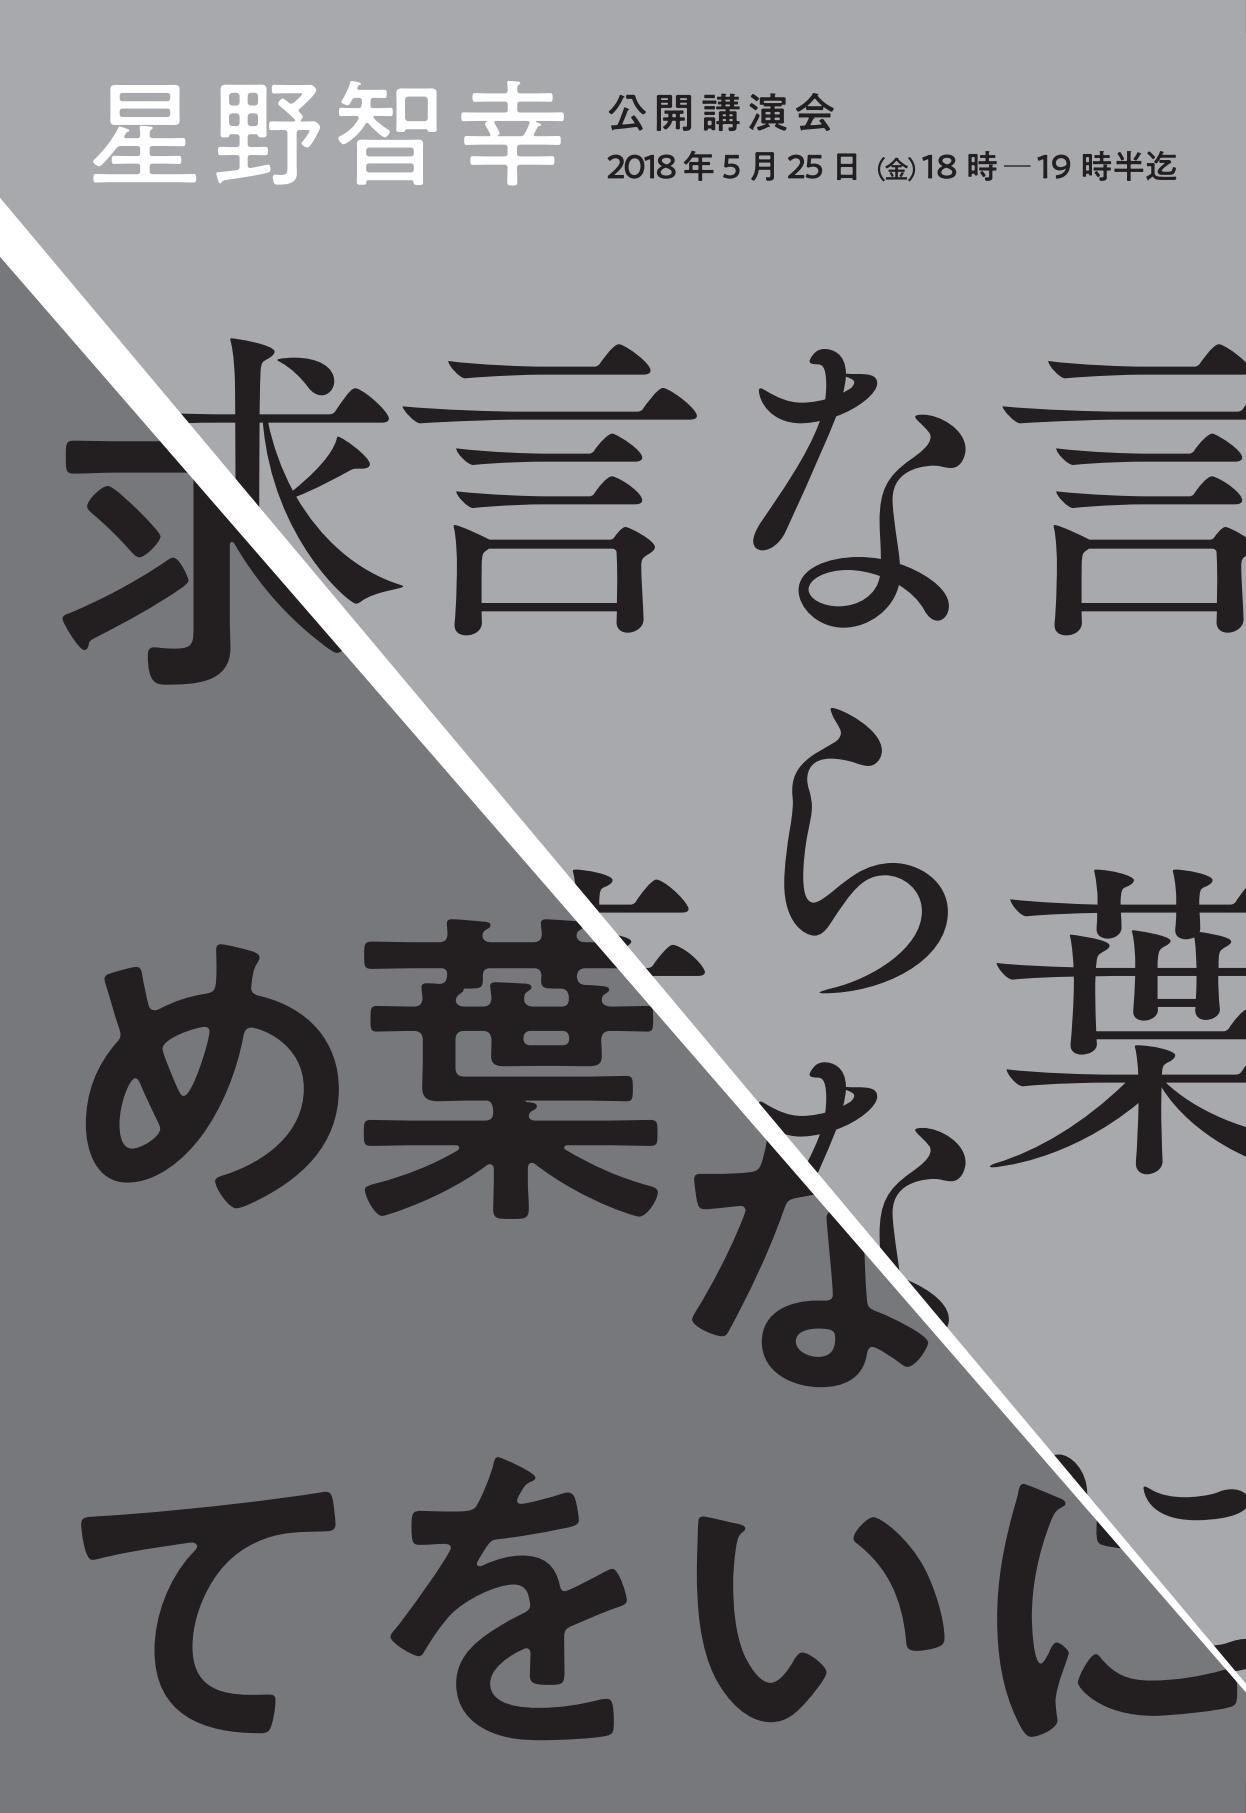 駒澤大学総合教育研究部が5月25日に作家の星野智幸氏による公開講演会「言葉にならない言葉を求めて」を開催